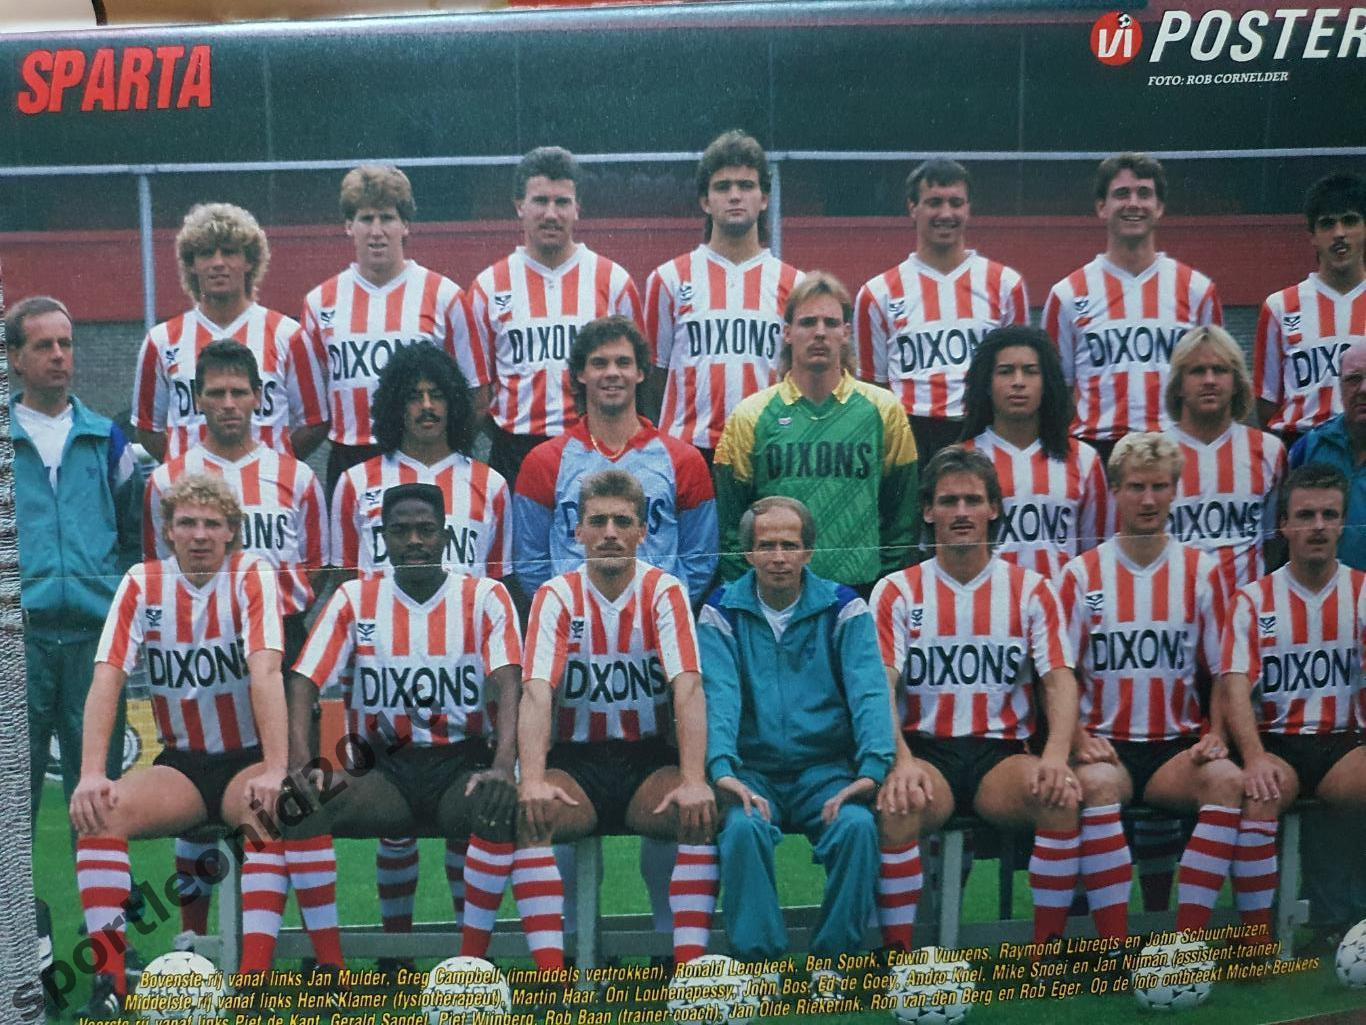 Voetbal International 1988.Годовая подписка.52 номера +4 спецвыпуска к Евро-88.3 7